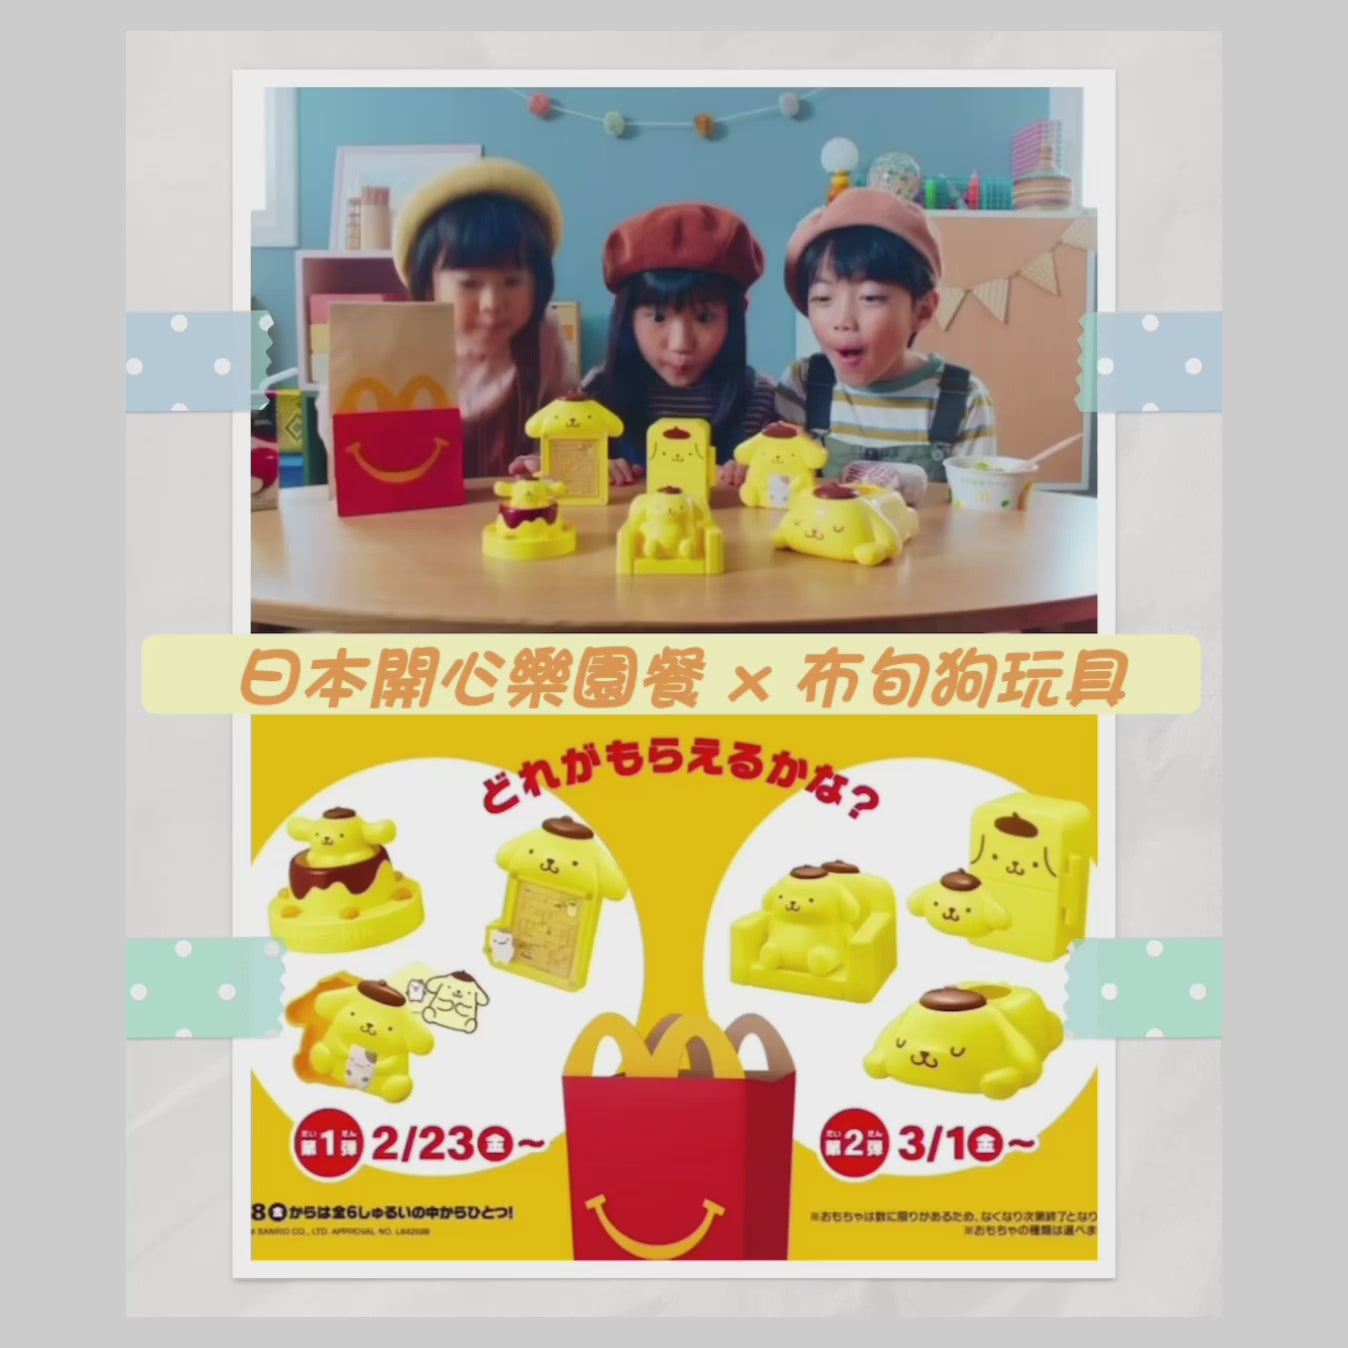 日本 McDonald 限定